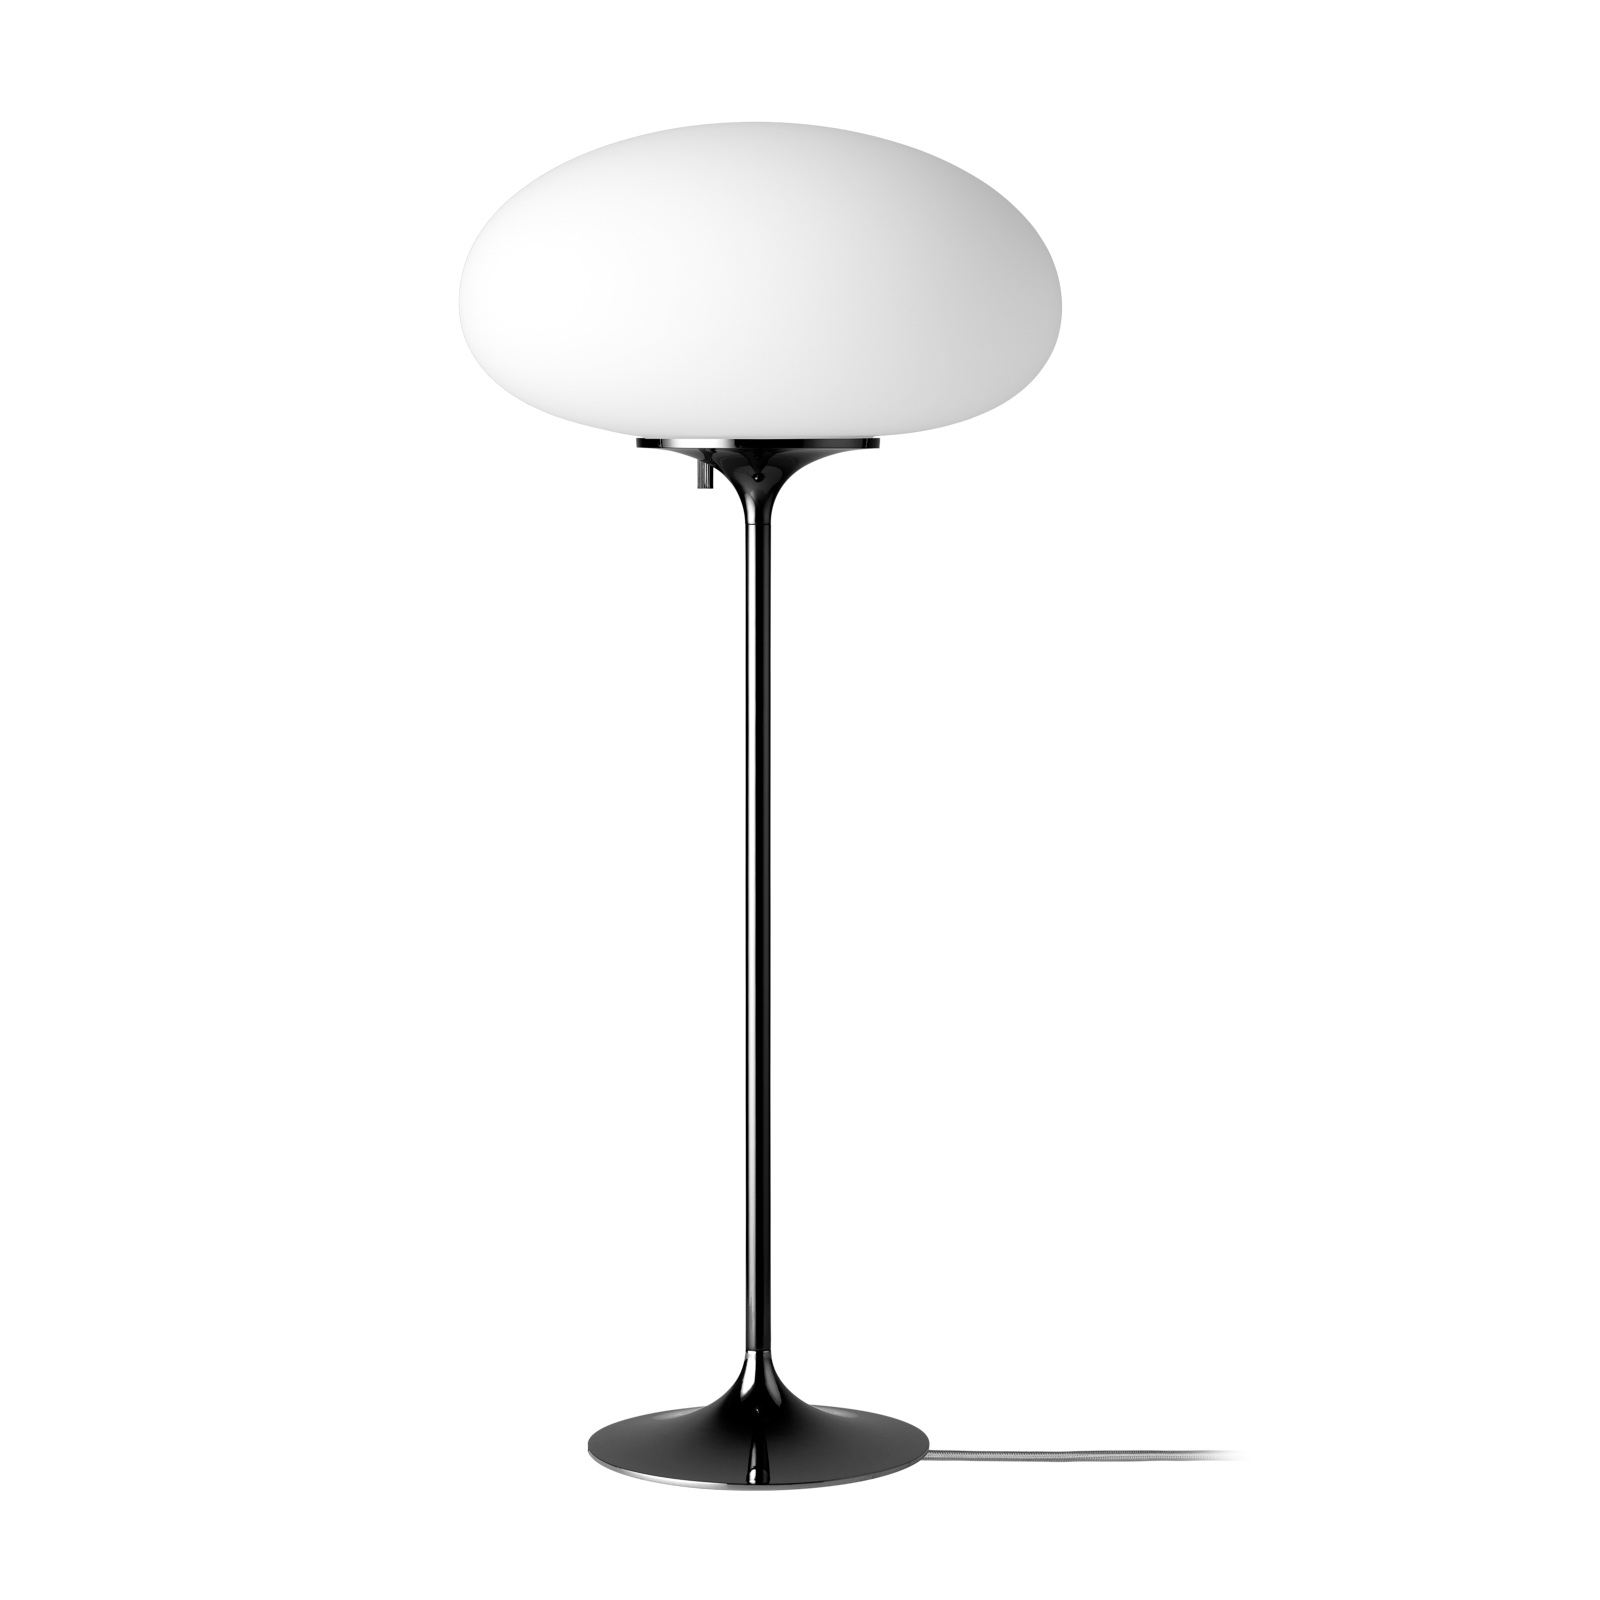 GUBI Stemlite table lamp, black chrome, 70 cm